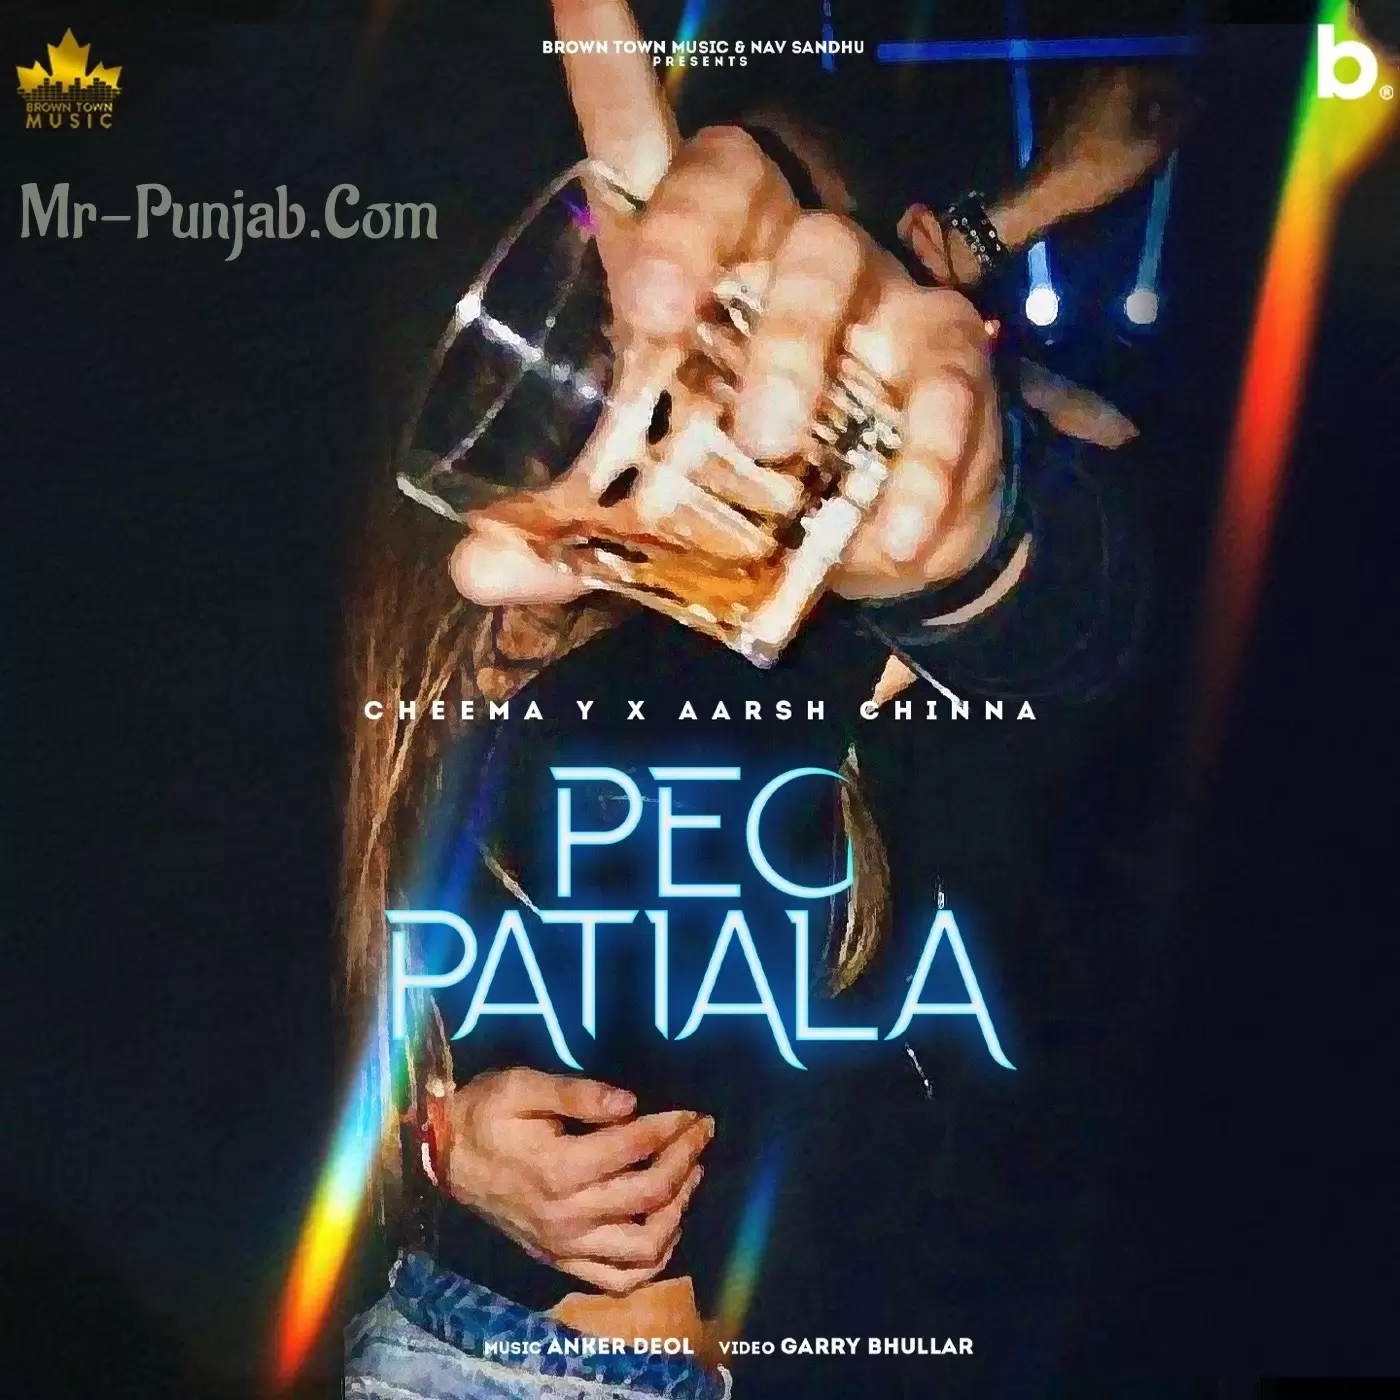 Peg Patiala Cheema Y Mp3 Download Song - Mr-Punjab